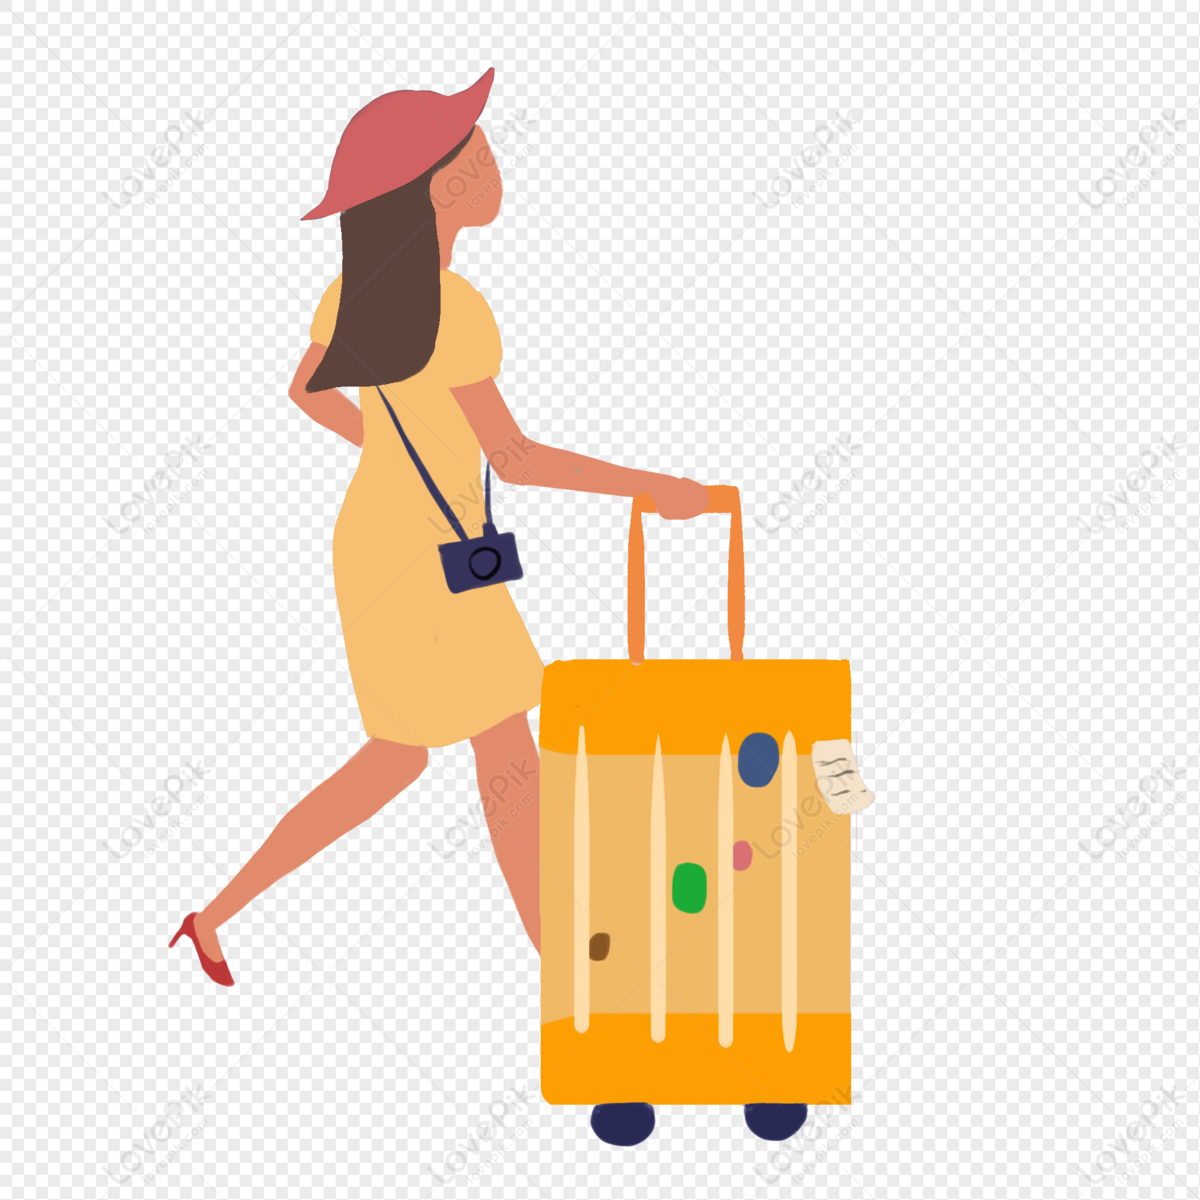 Hình ảnh của một chiếc vali du lịch là sự lựa chọn hoàn hảo cho những chuyến du lịch dài hạn. Khám phá những mẫu vali cao cấp tại Khóa Học Tiếng Anh, hãy tin rằng bạn sẽ tìm thấy chiếc vali ưng ý của mình và cùng chia sẻ những hình ảnh đẹp nhất với người thân và bạn bè.